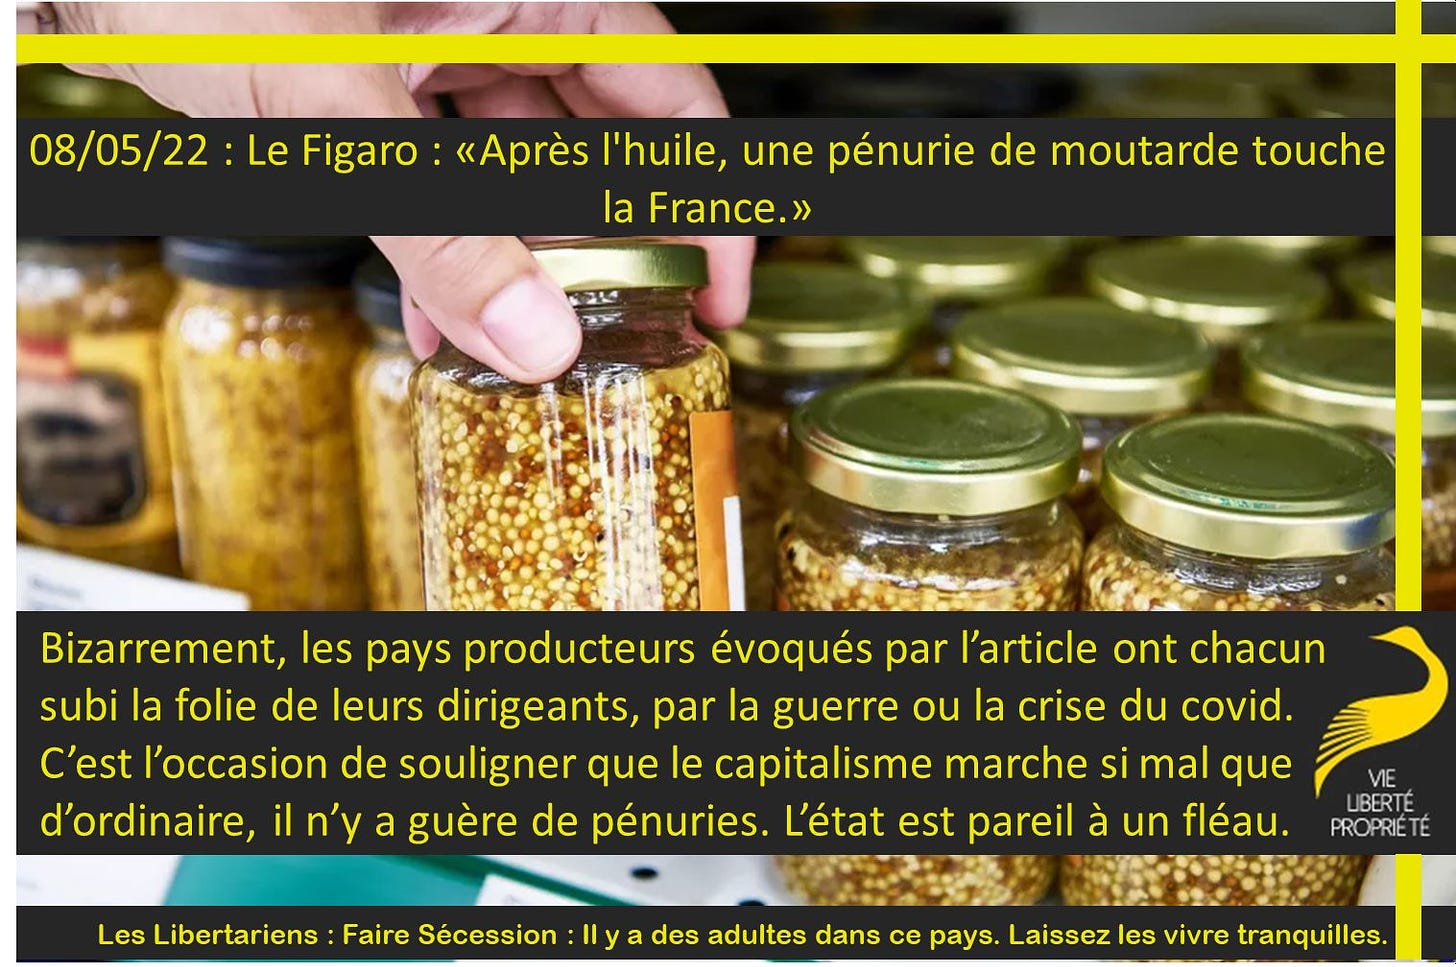 Peut être une image de aliment et texte qui dit ’08/05/22 Le Figaro: «Après l'huile, une pénurie de moutarde touche la France.» Bizarrement, les pays producteurs évoqués par l'article ont chacun subi la folie de leurs dirigeants, par la guerre ou la crise du covid. C'est l'occasion de souligner que le capitalisme marche si mal que d'ordinaire, n'y iln'y a guère de pénuries. L'état est pareil à un fléau. Les Libertariens Faire Sécession LIBERTE PROPRIÉTÉ des adultes dans ce pays. Laissez les vivre tranquilles.’